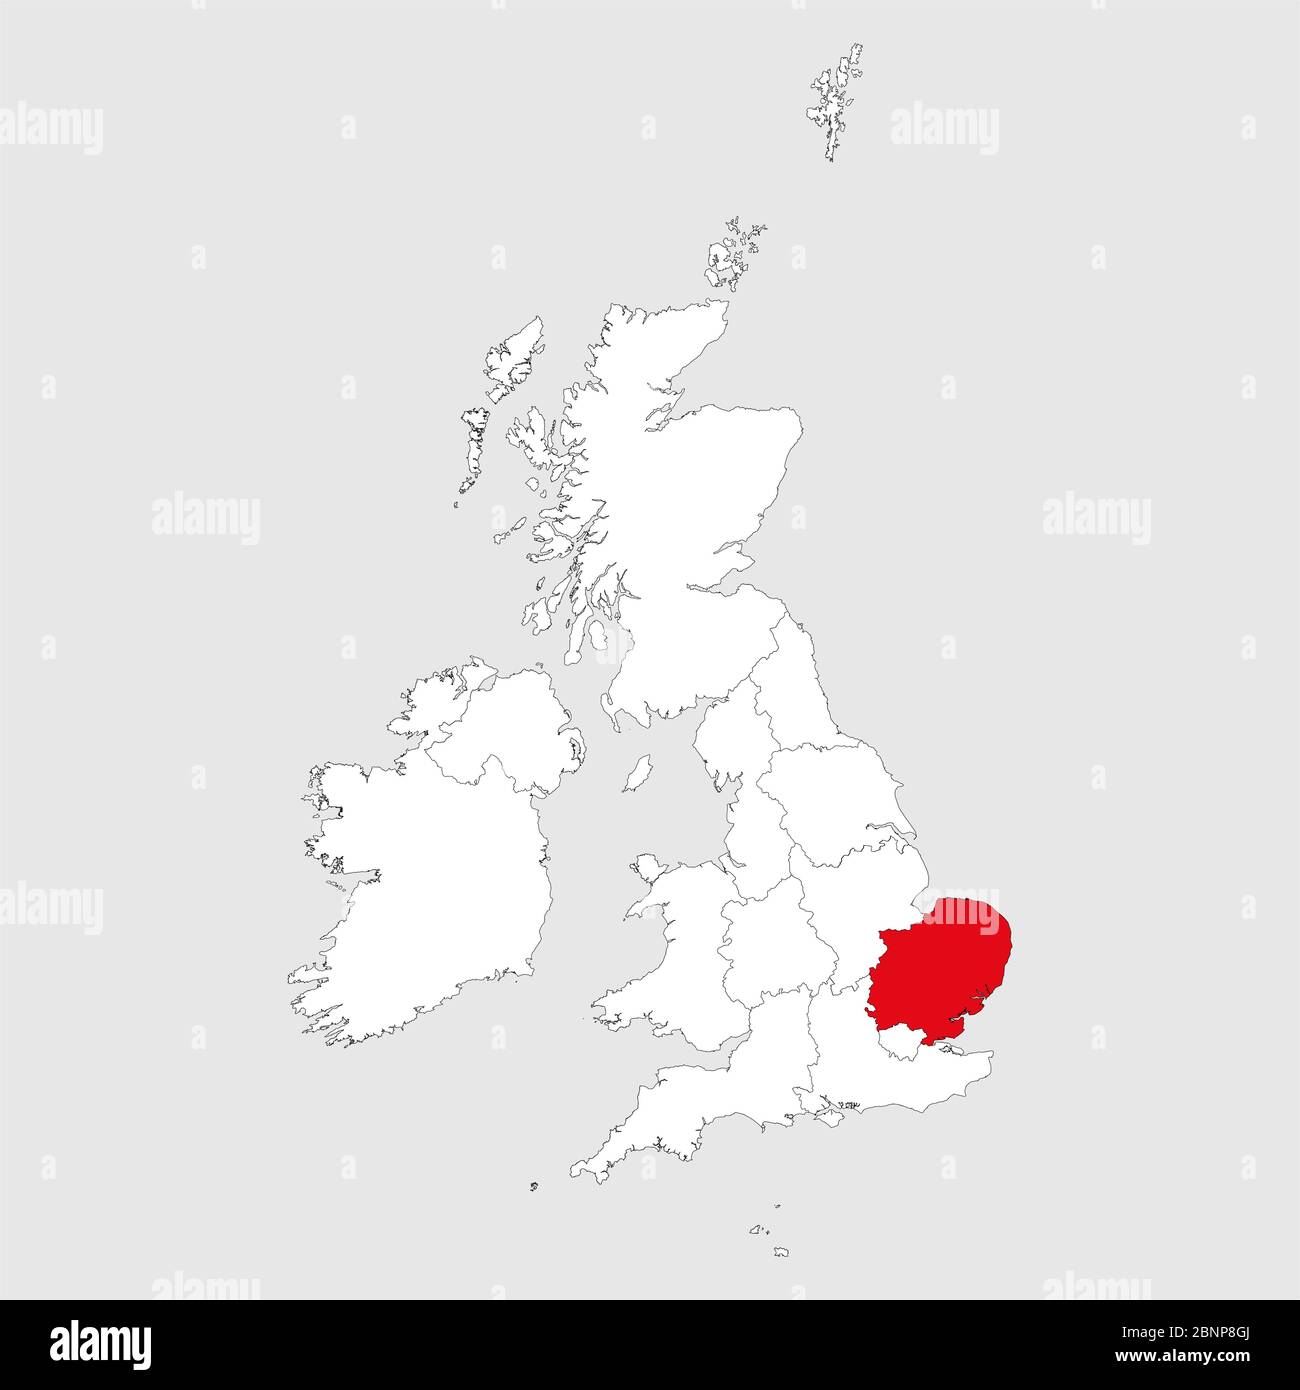 L'Inghilterra orientale è contrassegnata in rosso sul vettore cartografico del regno unito. Sfondo grigio chiaro. Illustrazione Vettoriale